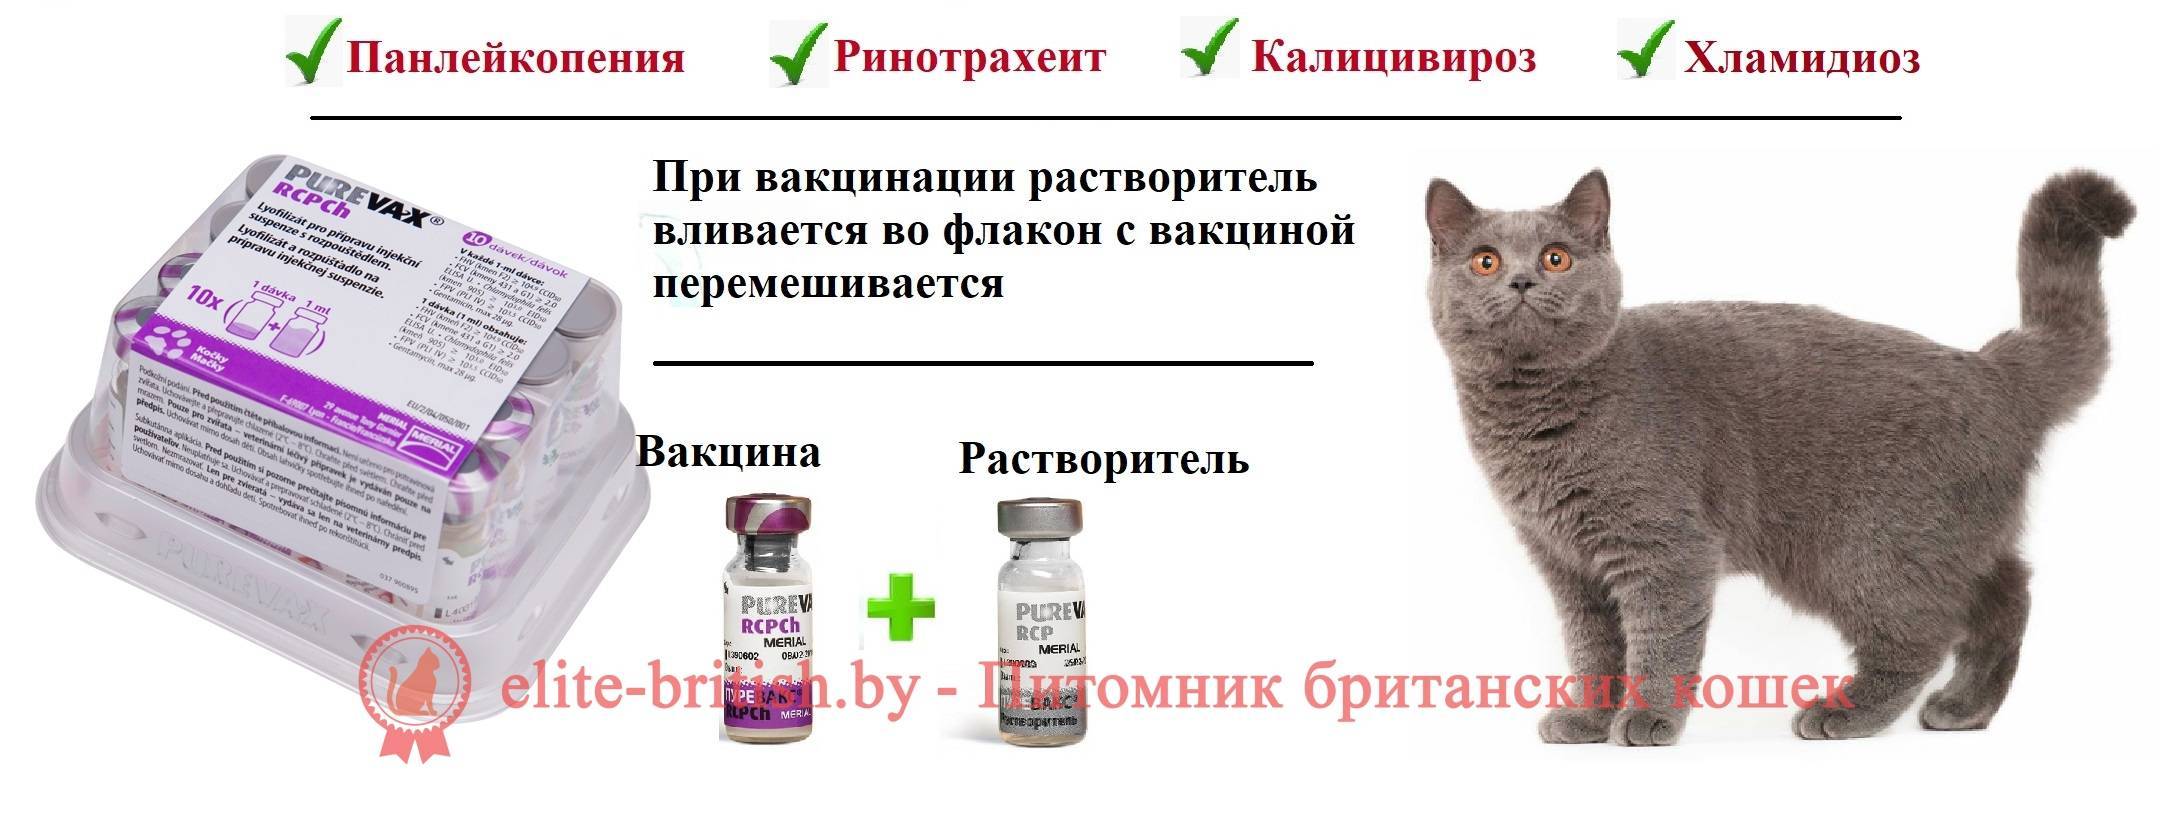 Комплексная прививка для кошек - что входит?